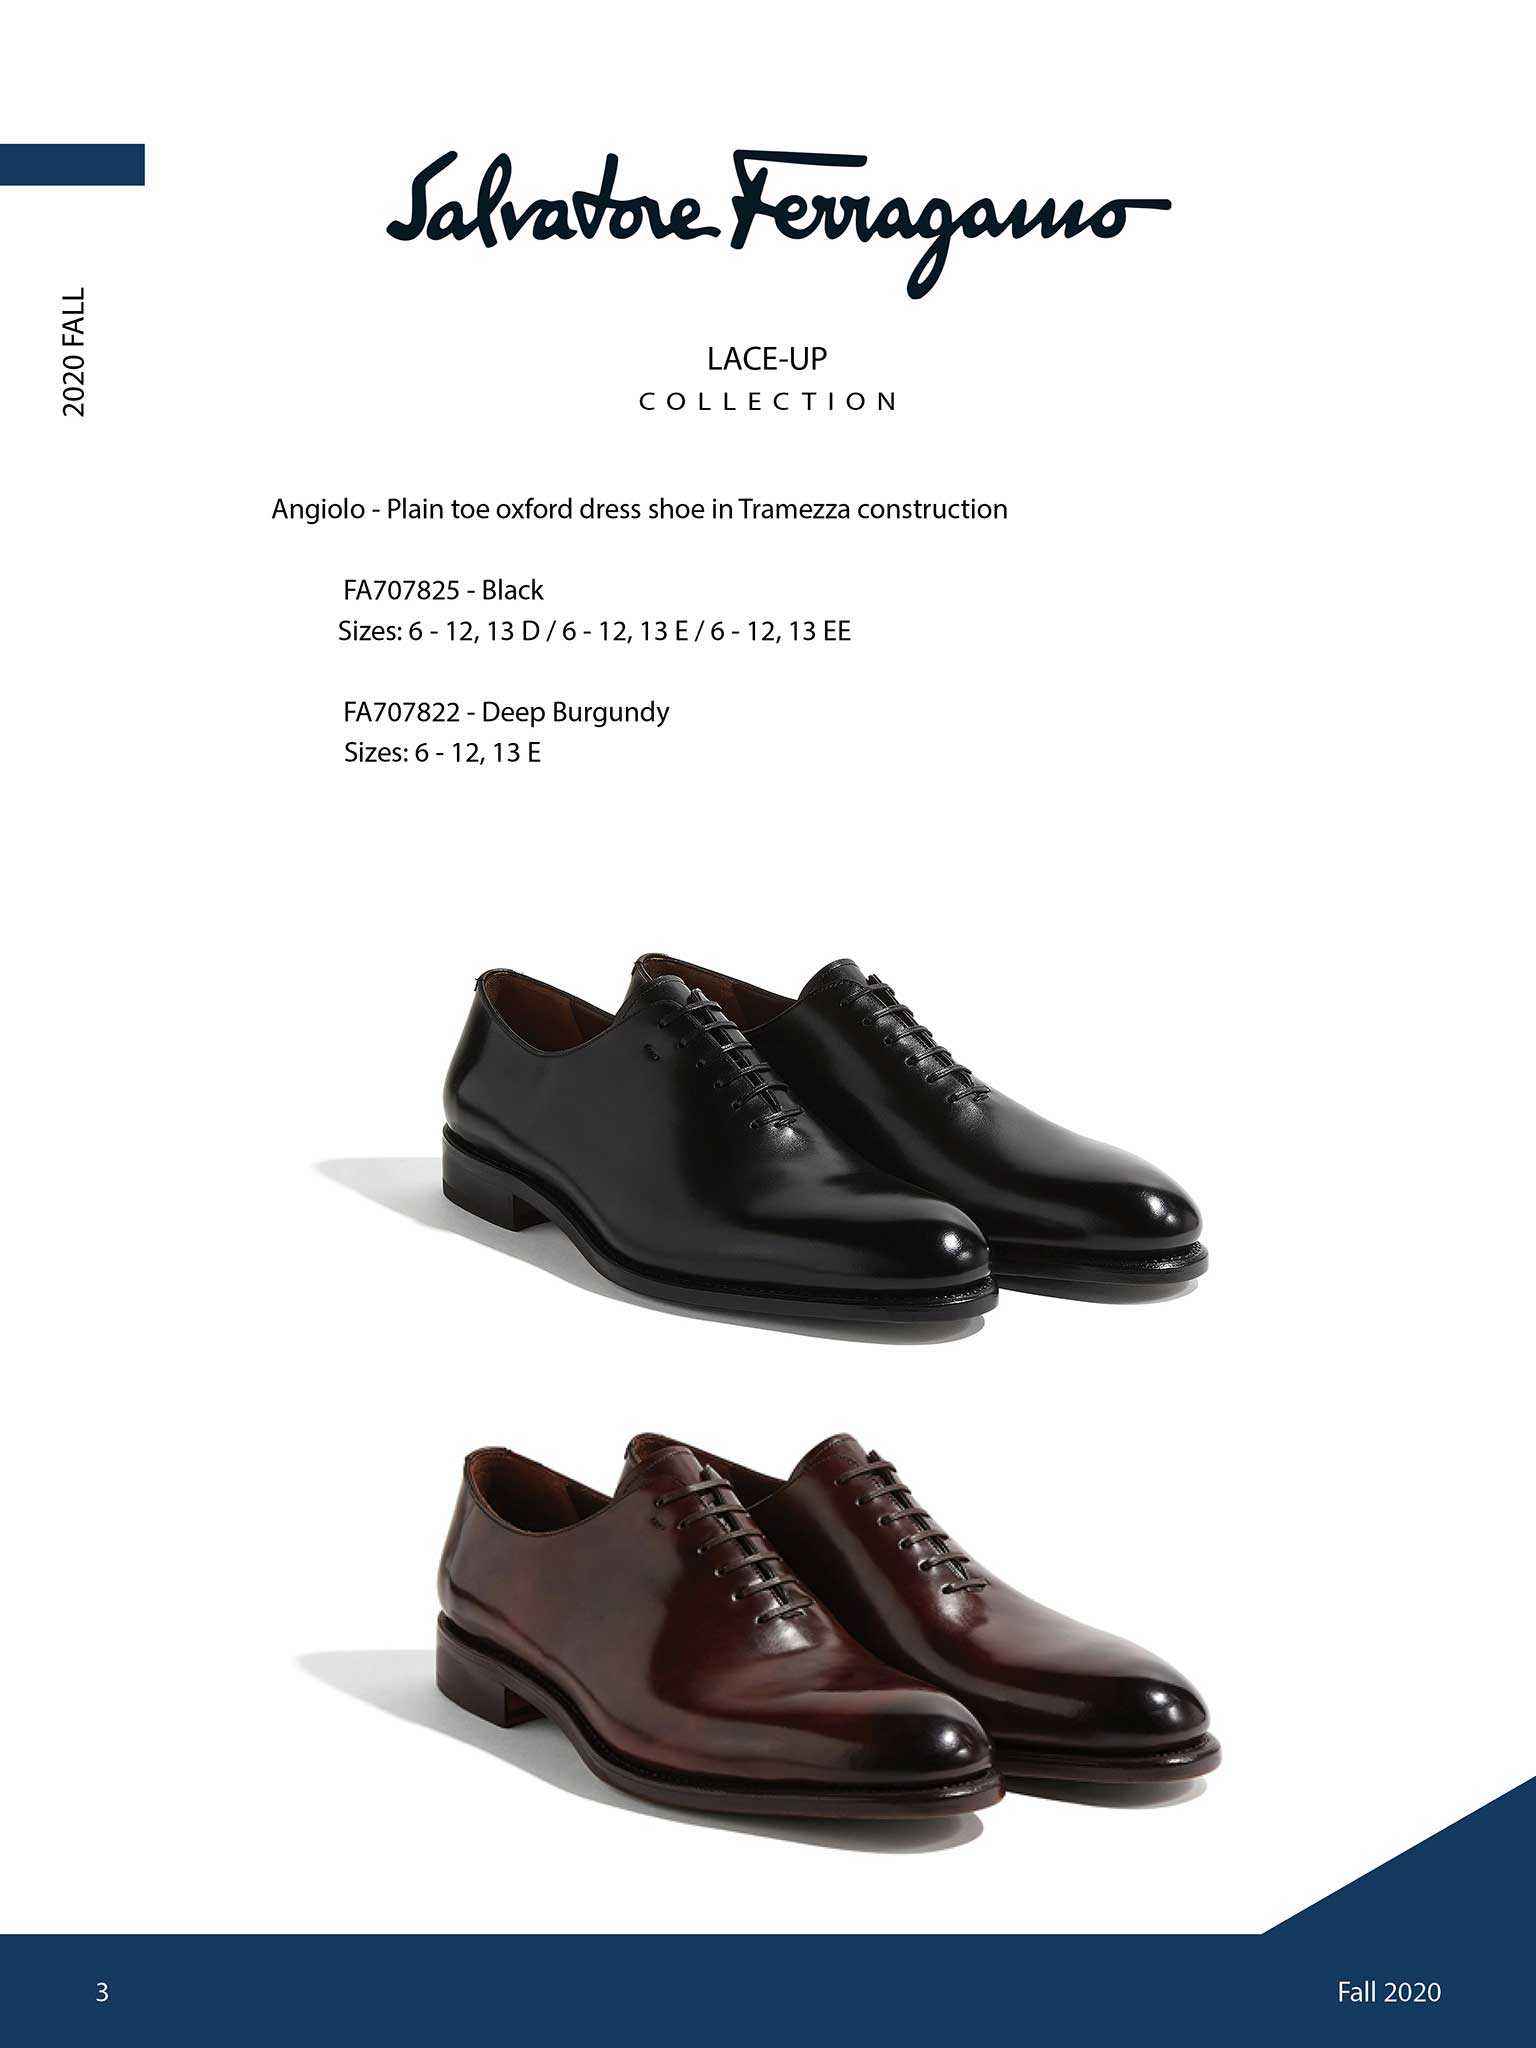 Ferragamo Shoes & Belts                                                                                                                                                                                                                                   , Angiolo  by Salvatore Ferragamo